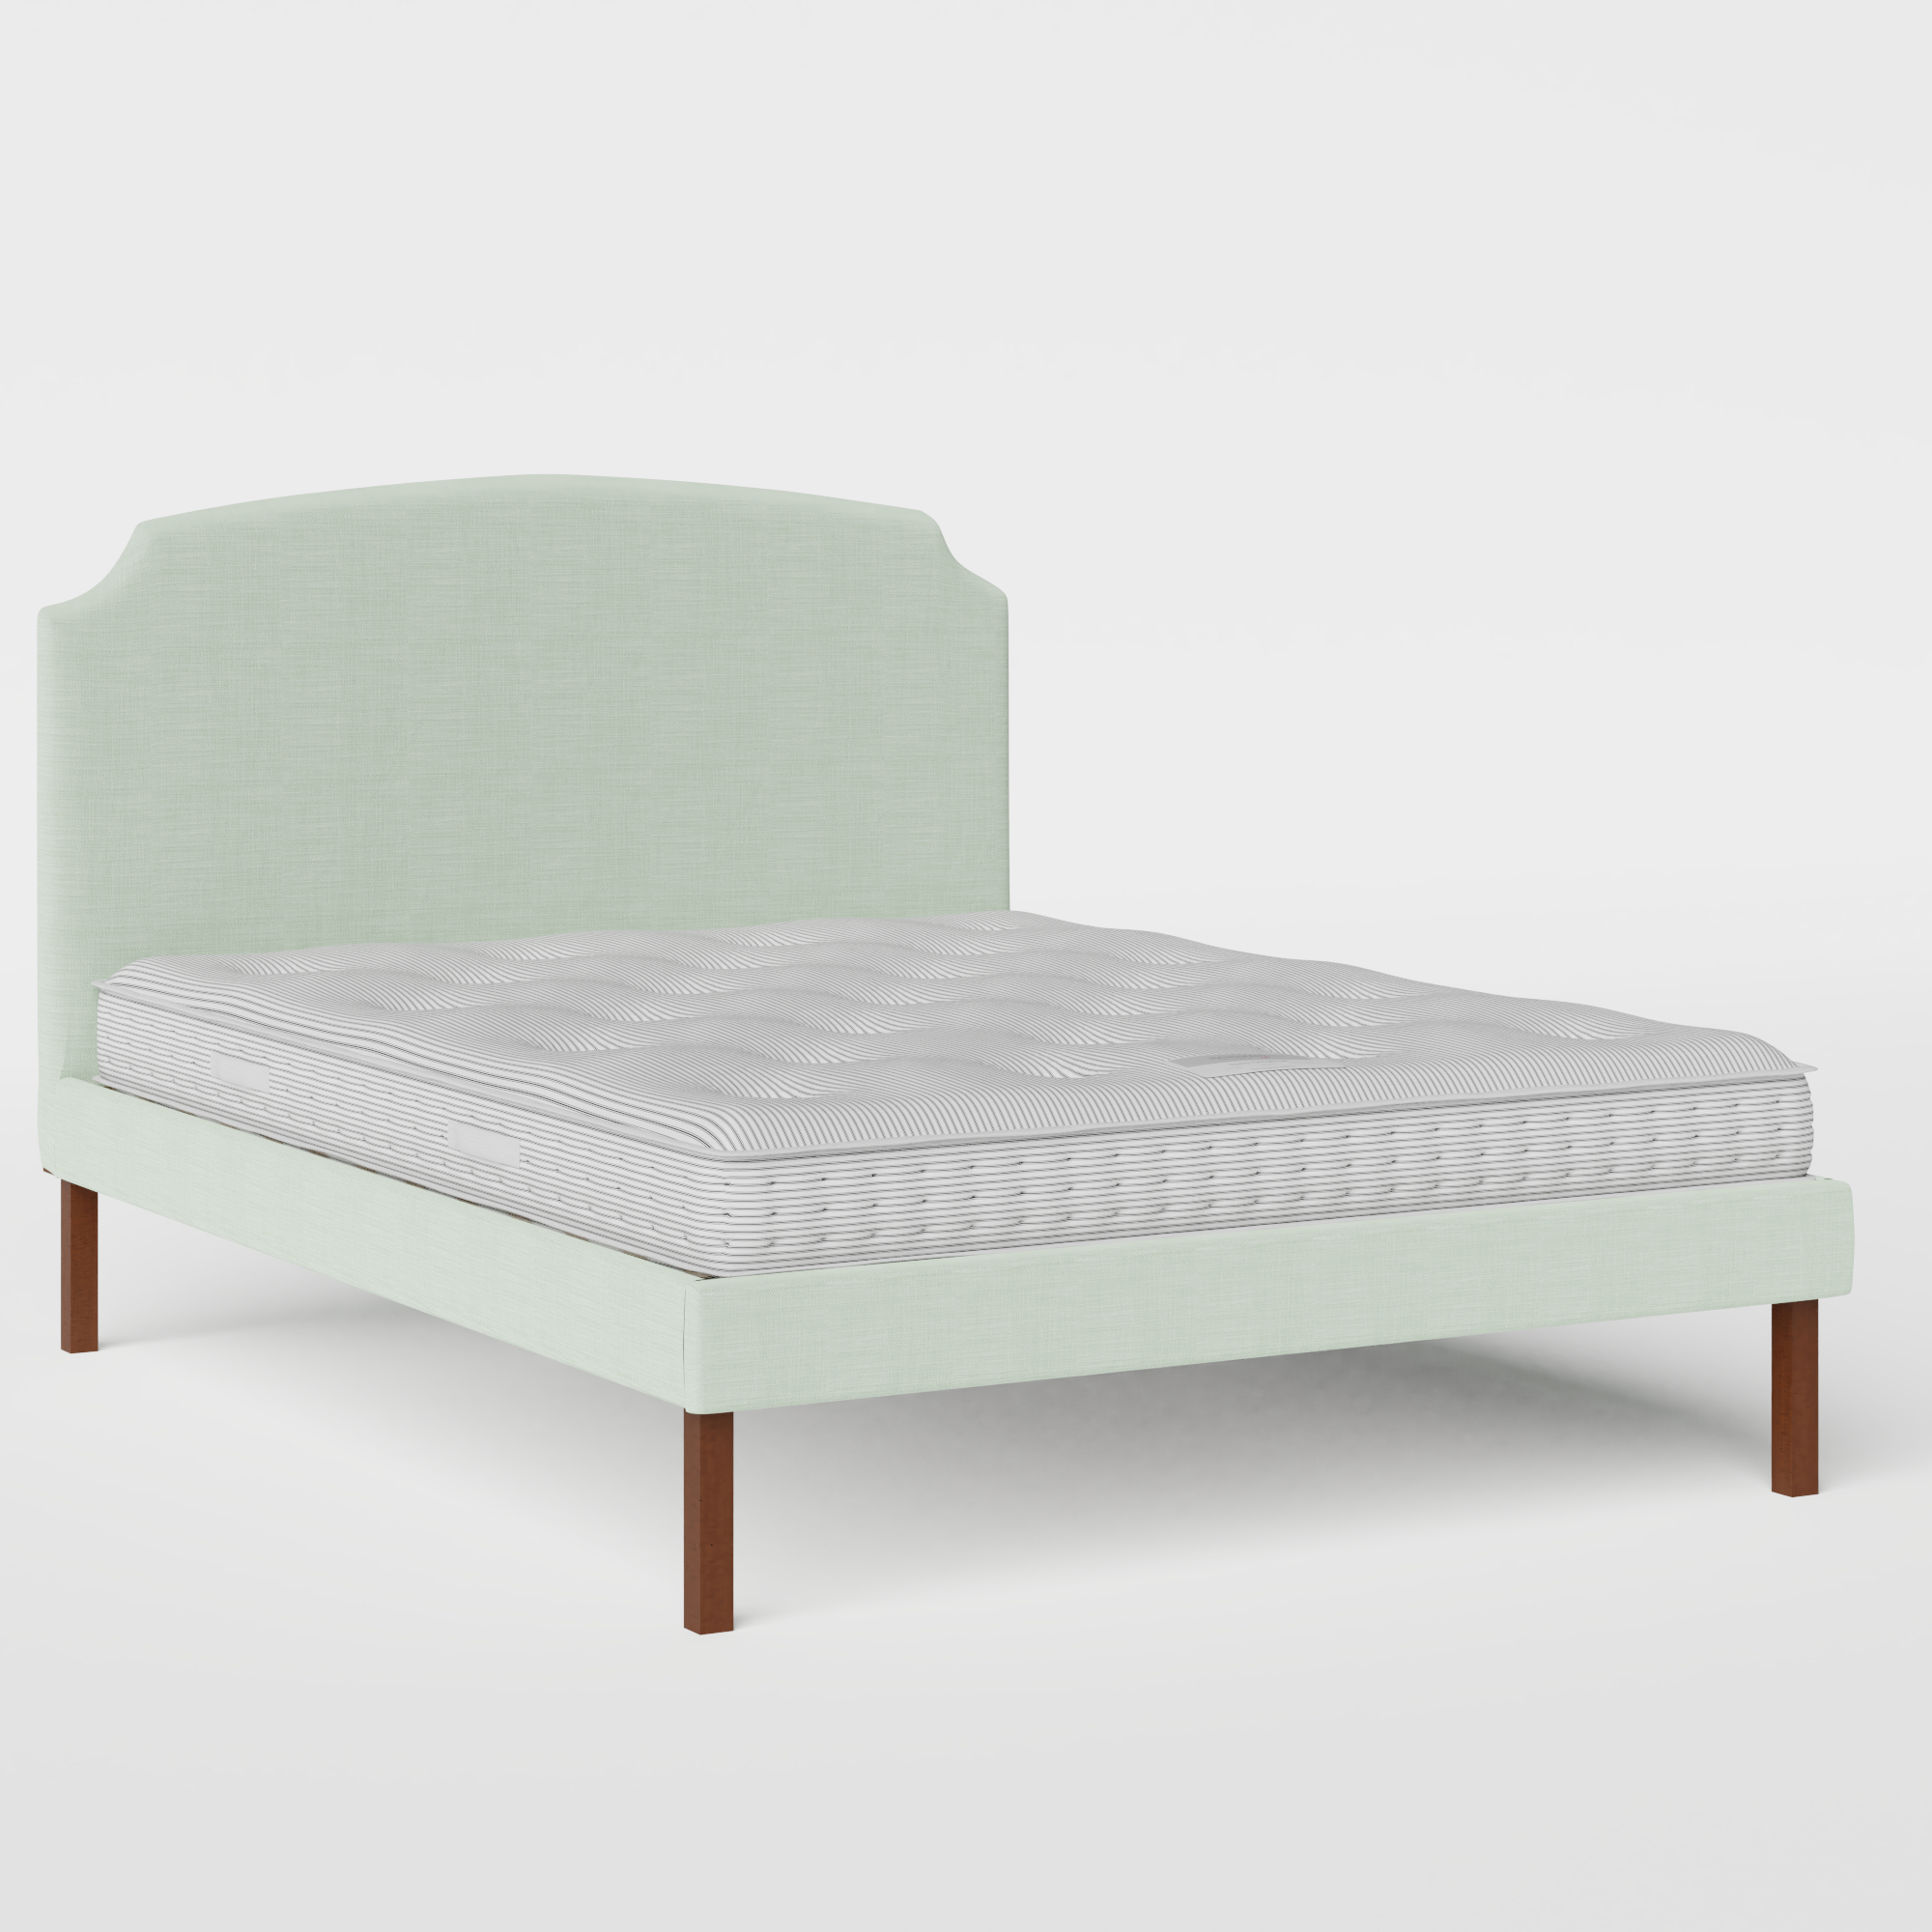 Kobe Upholstered upholstered bed in duckegg fabric